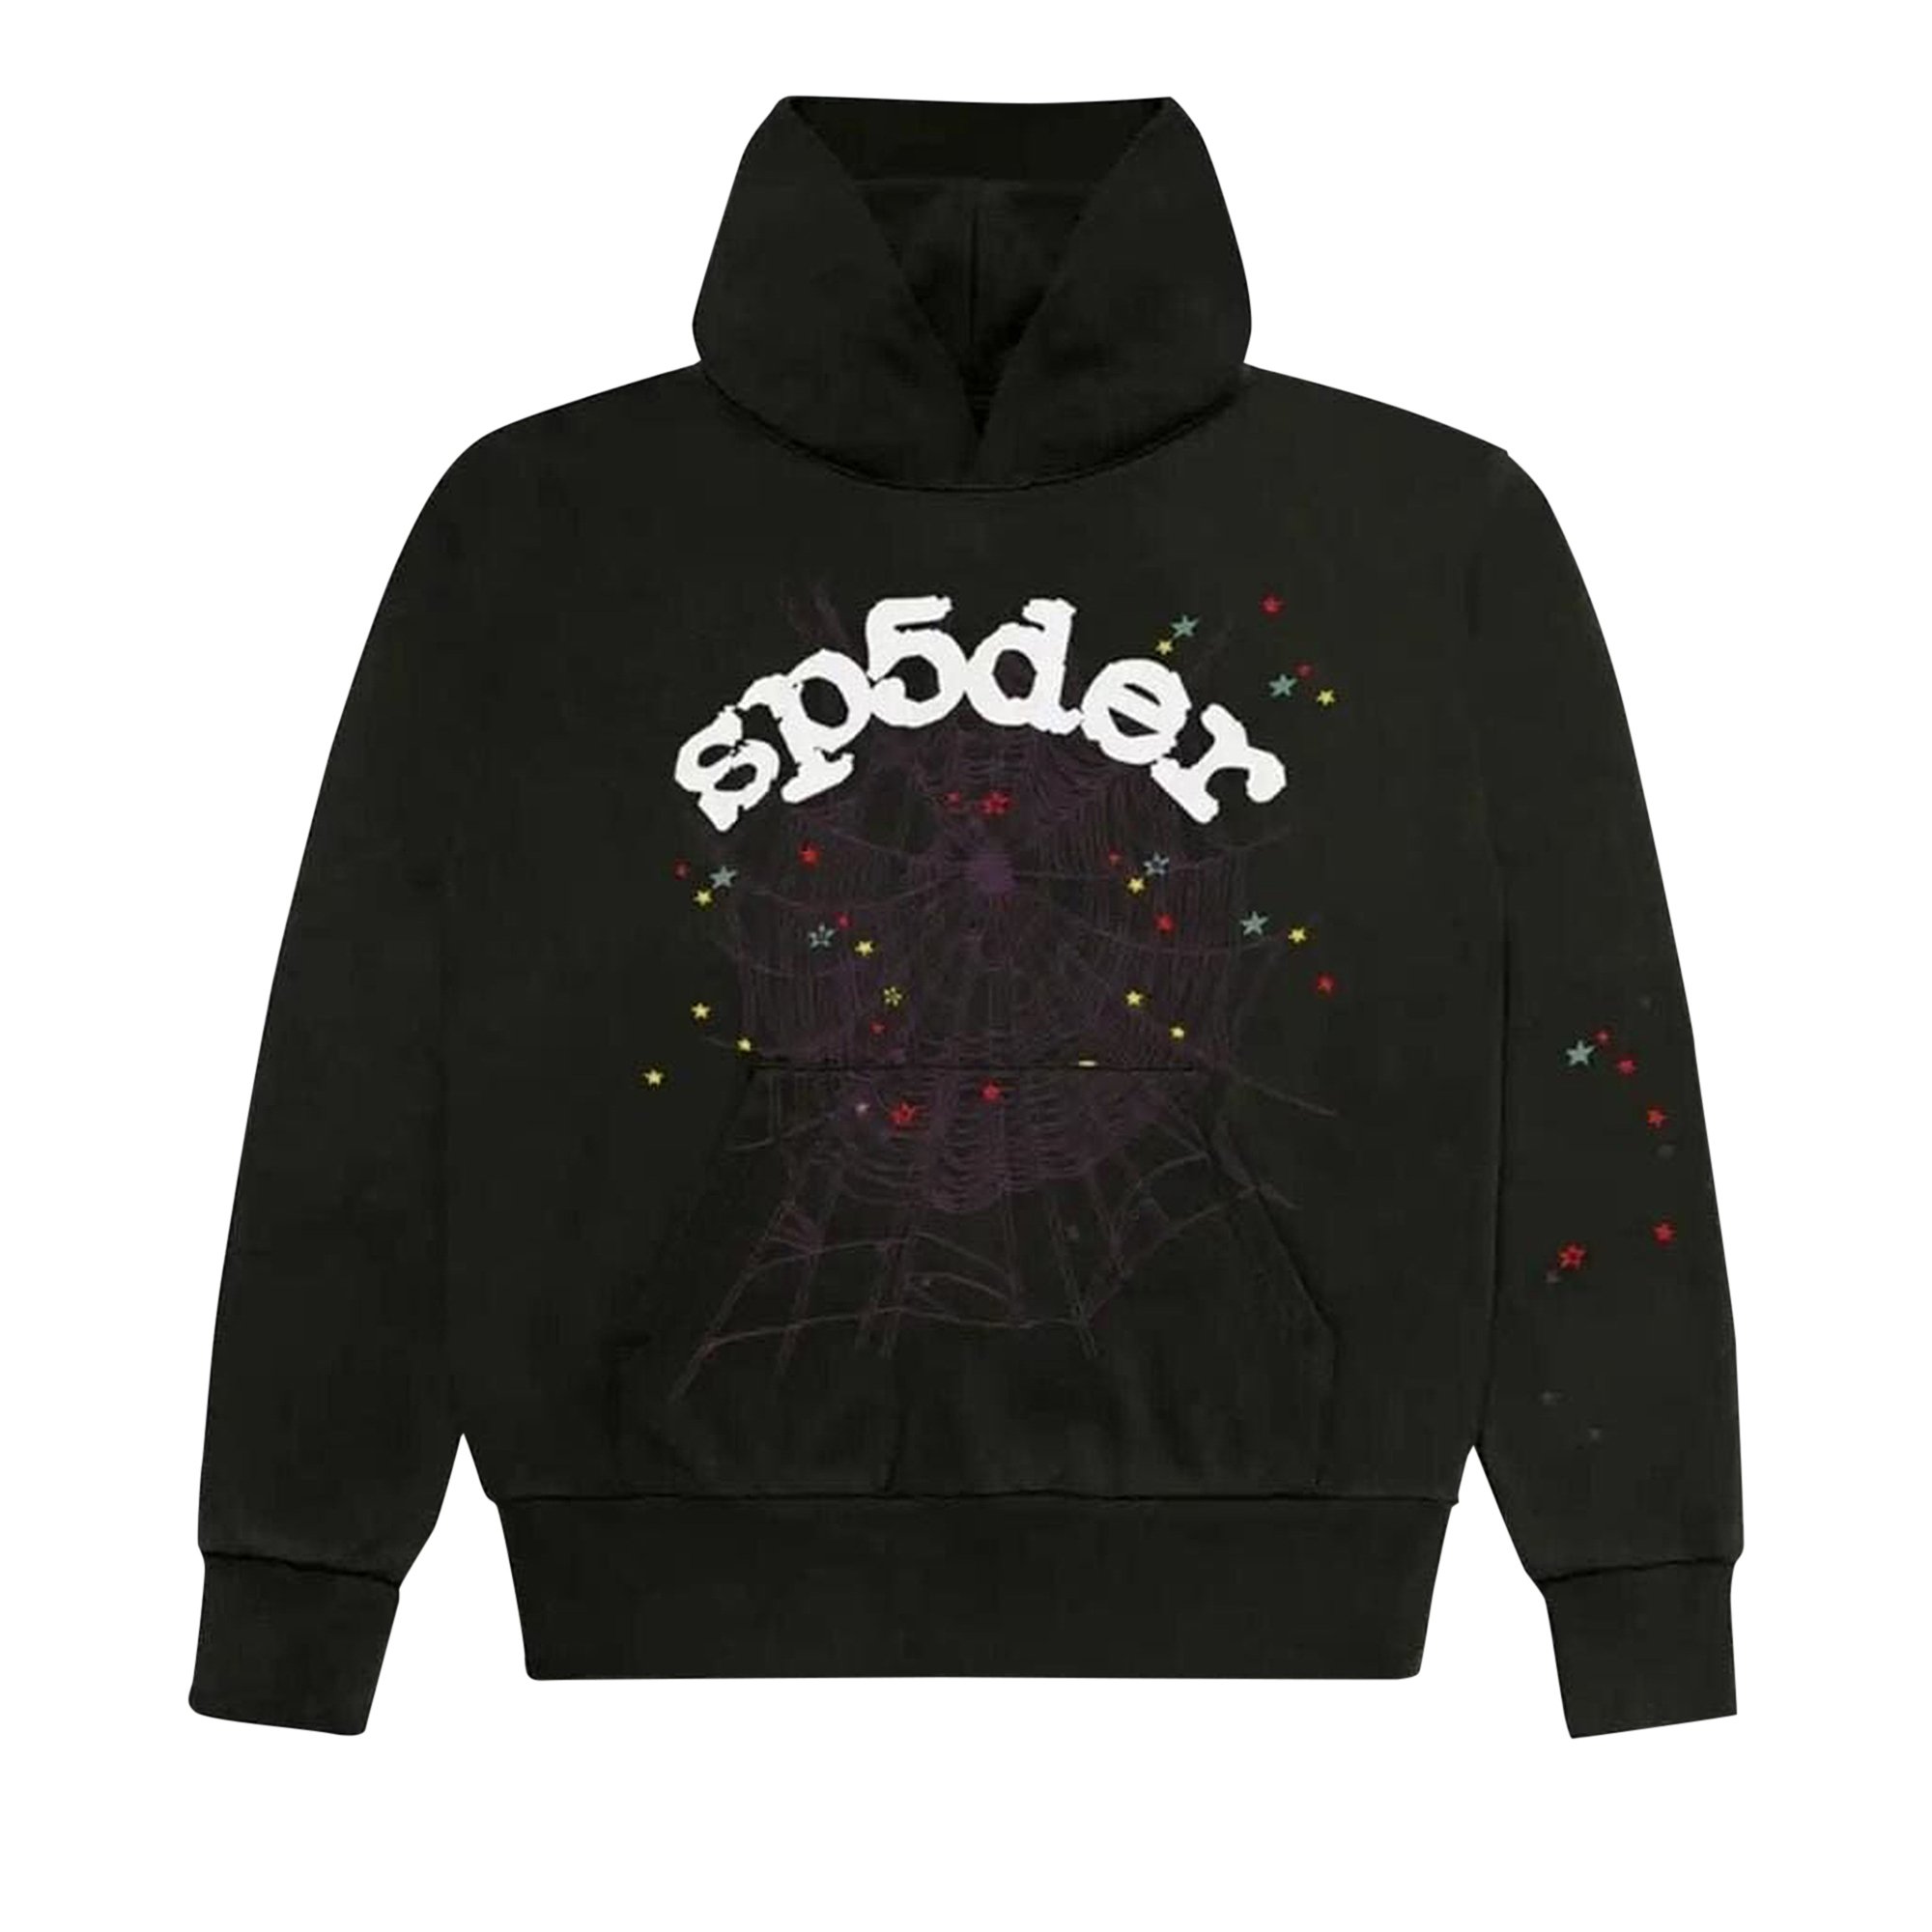 Buy Sp5der Logo Hoodie Sweatshirt 'Black' - 2406 100000106LHS BLAC 